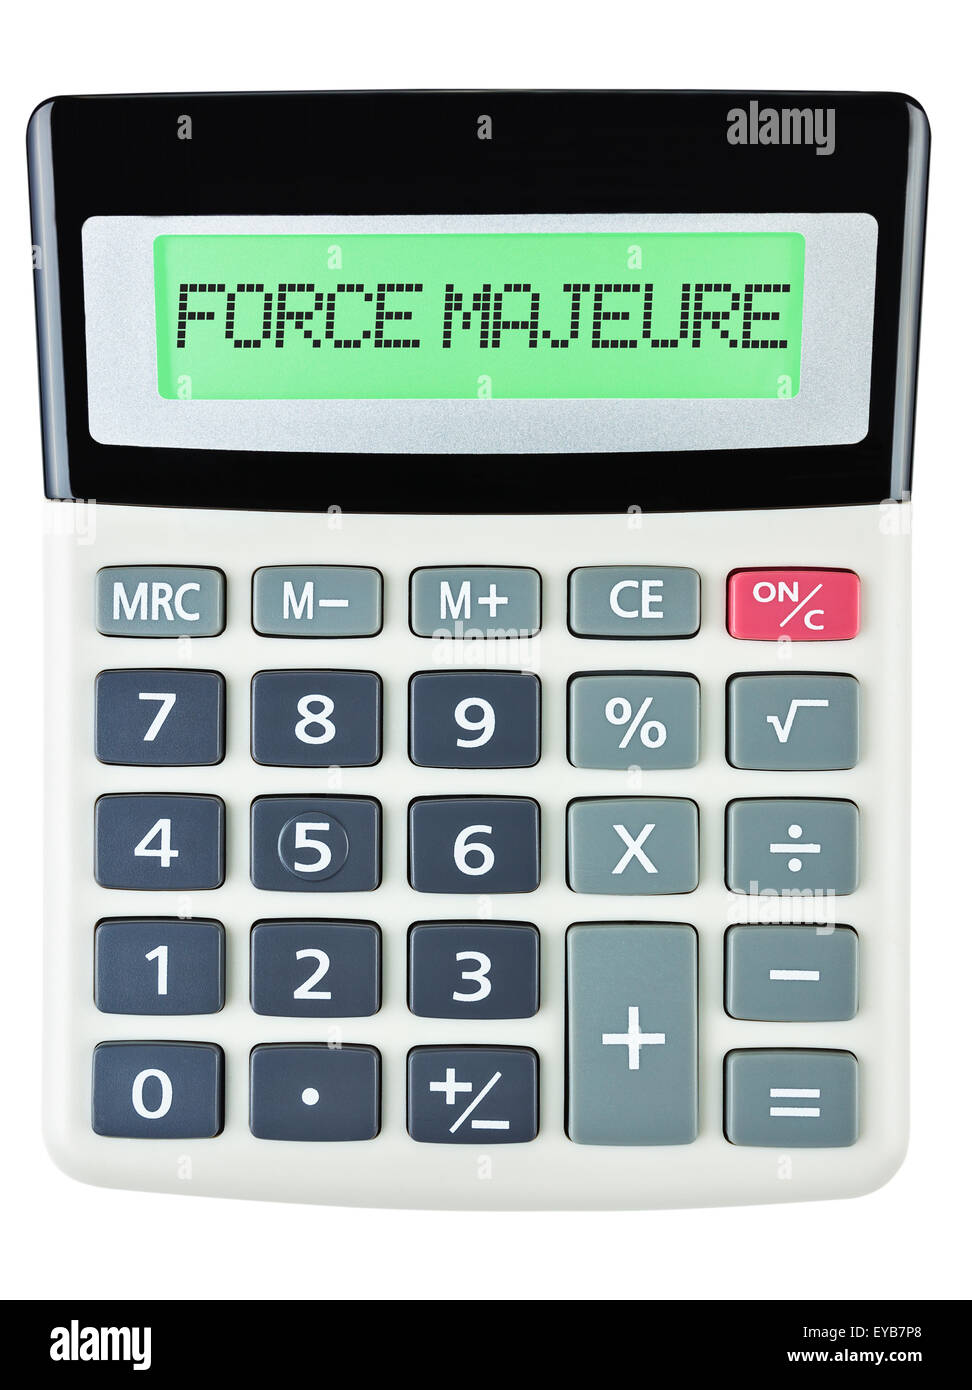 Calculatrice avec FORCE MAJEURE sur l'affichage sur fond blanc Banque D'Images